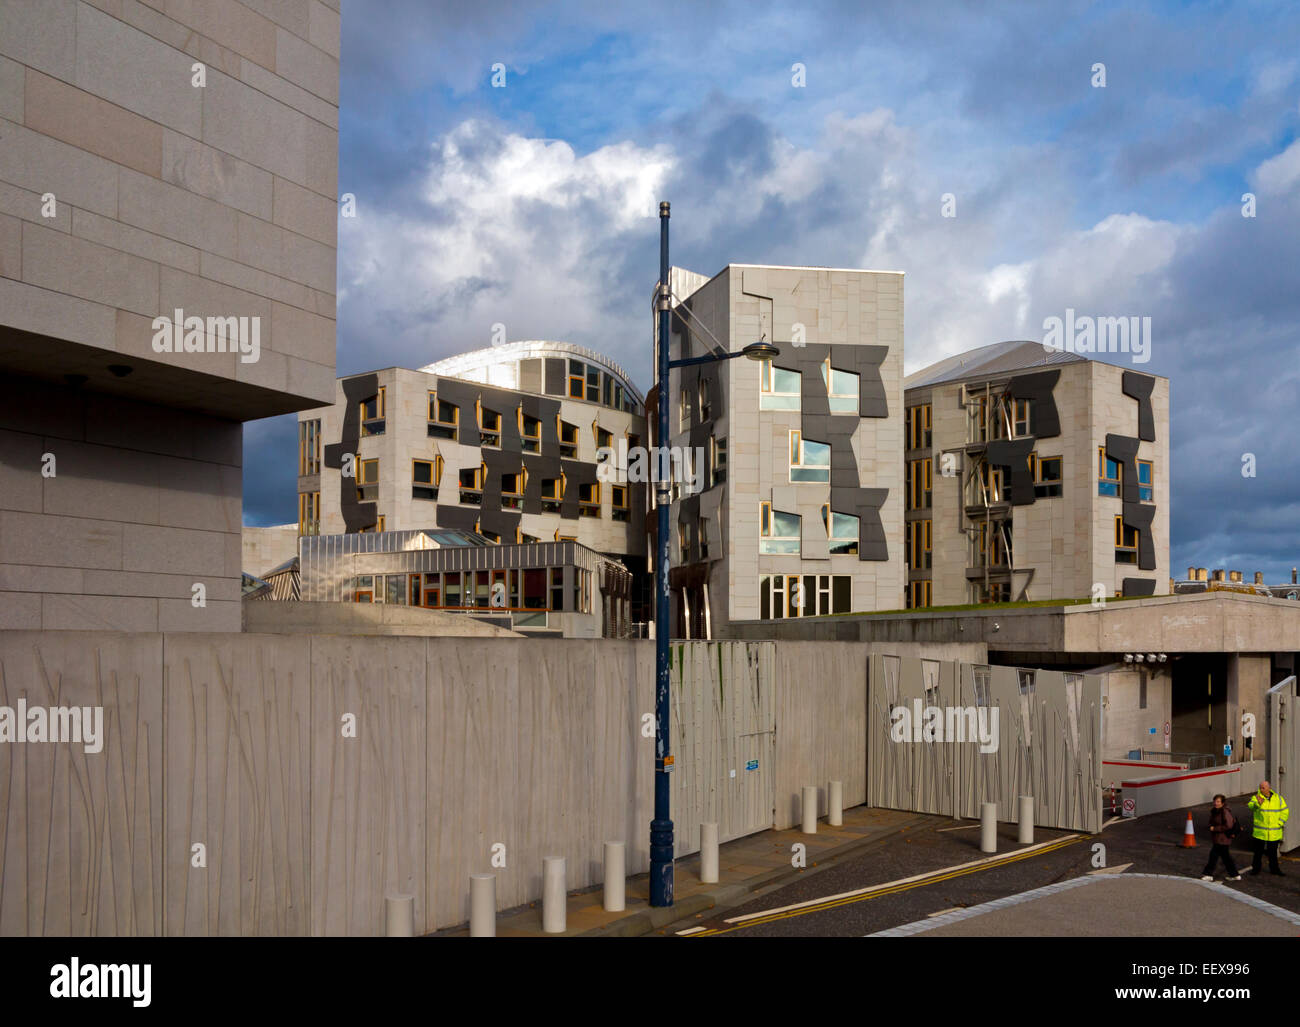 Bâtiment du Parlement écossais à Holyrood à Edimbourg Ecosse UK ouvert en 2004 conçu par Enric Miralles en style post-moderne Banque D'Images